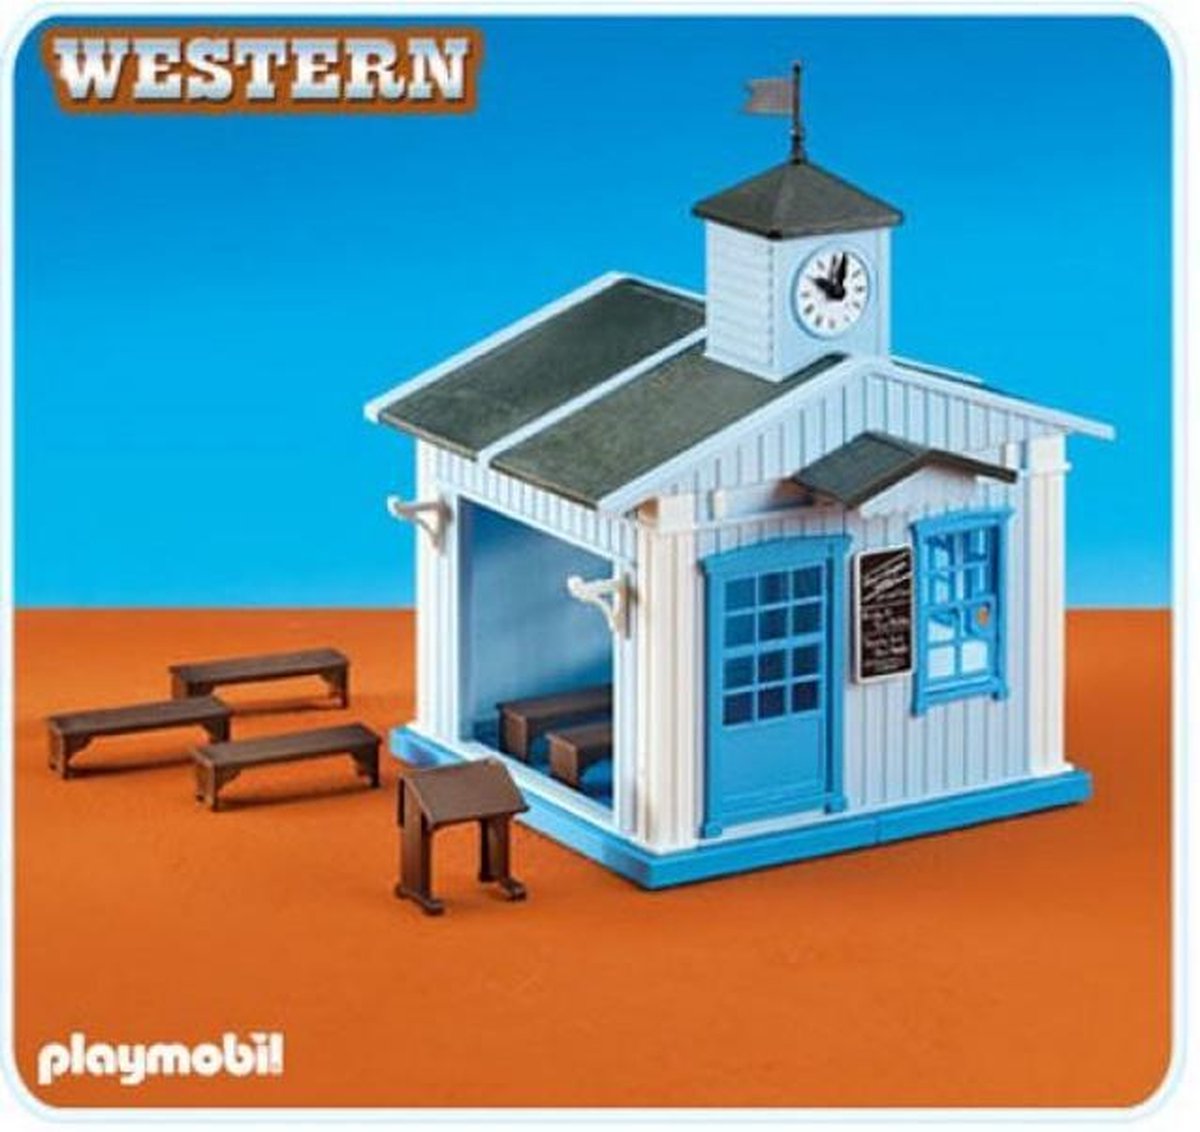 Playmobil Western 6279 Western School